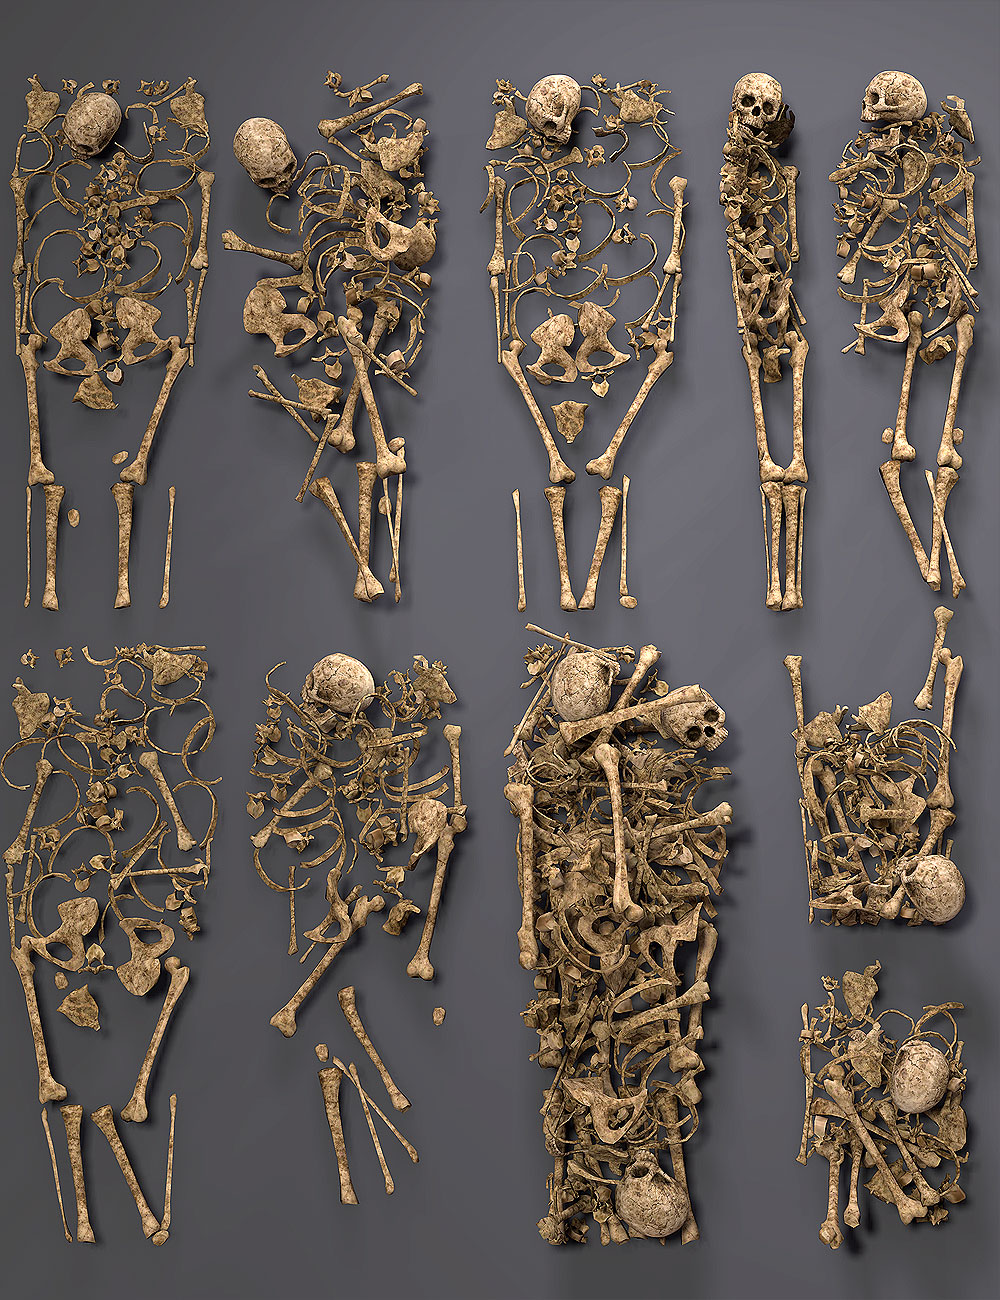 Them Bones 3 by: Orestes Graphics, 3D Models by Daz 3D